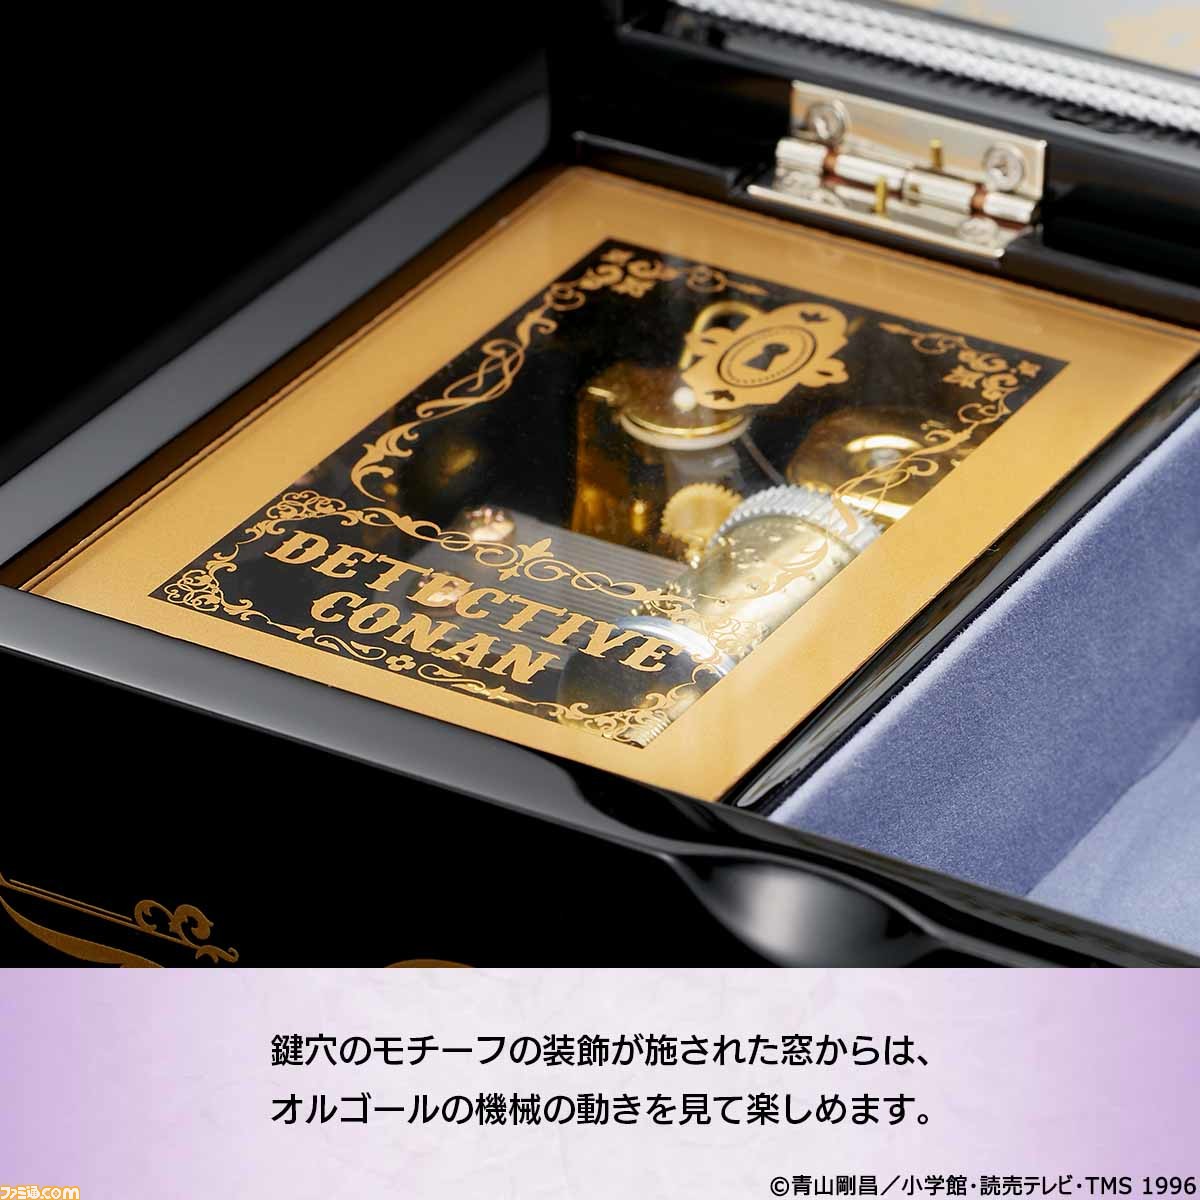 名探偵コナン』灰原哀をイメージした会津塗のオルゴールが発売。ふたを